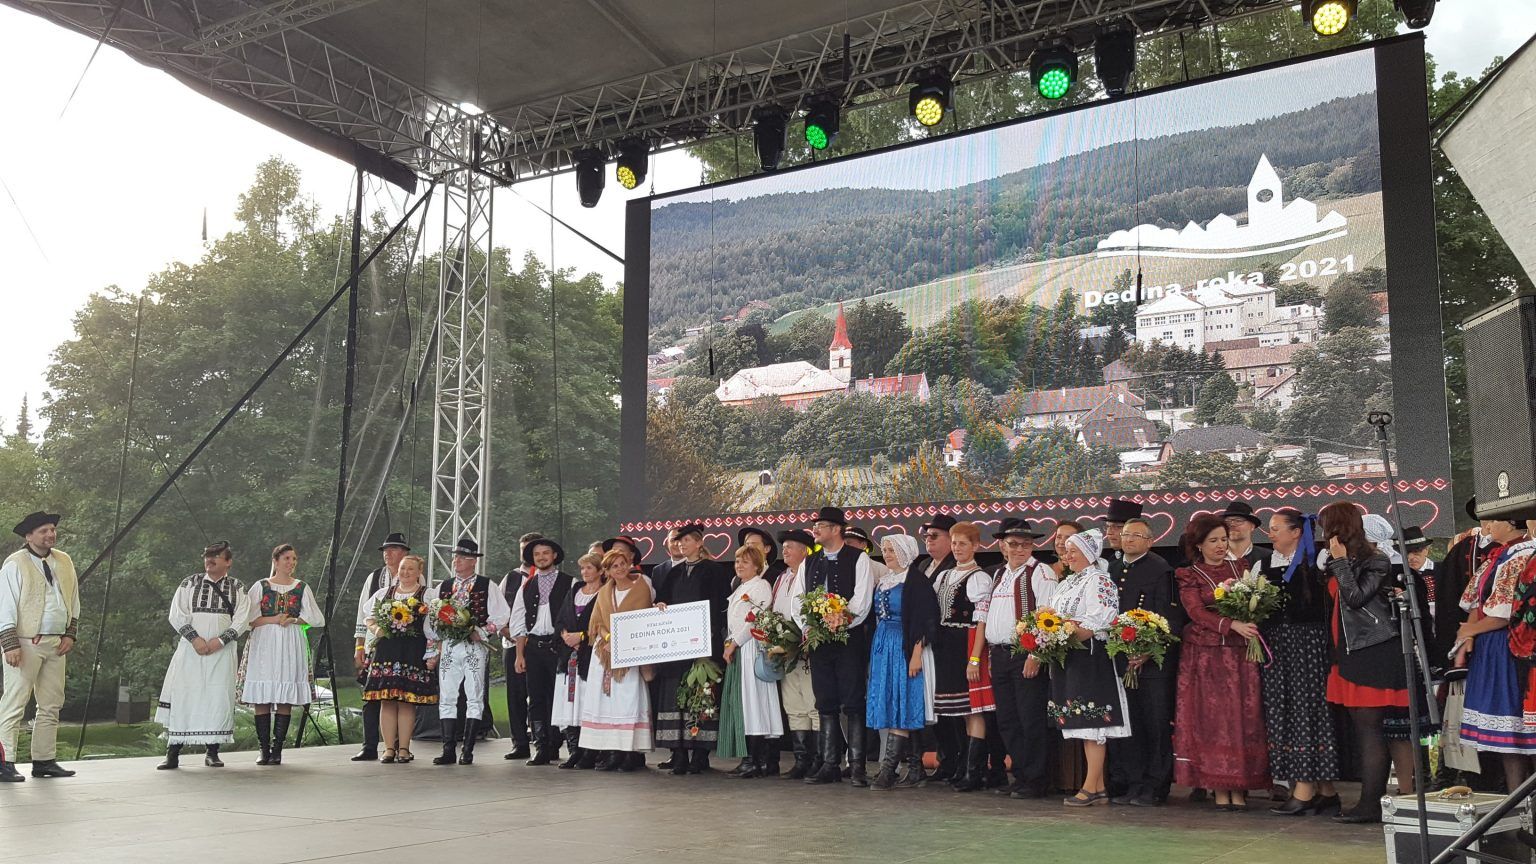 Výsledky súťaže Dedina roka 2021 vyhlásili ešte v septembri 2021 na podujatí Slovenský deň kroja foto dedinaroka.sk.jpg